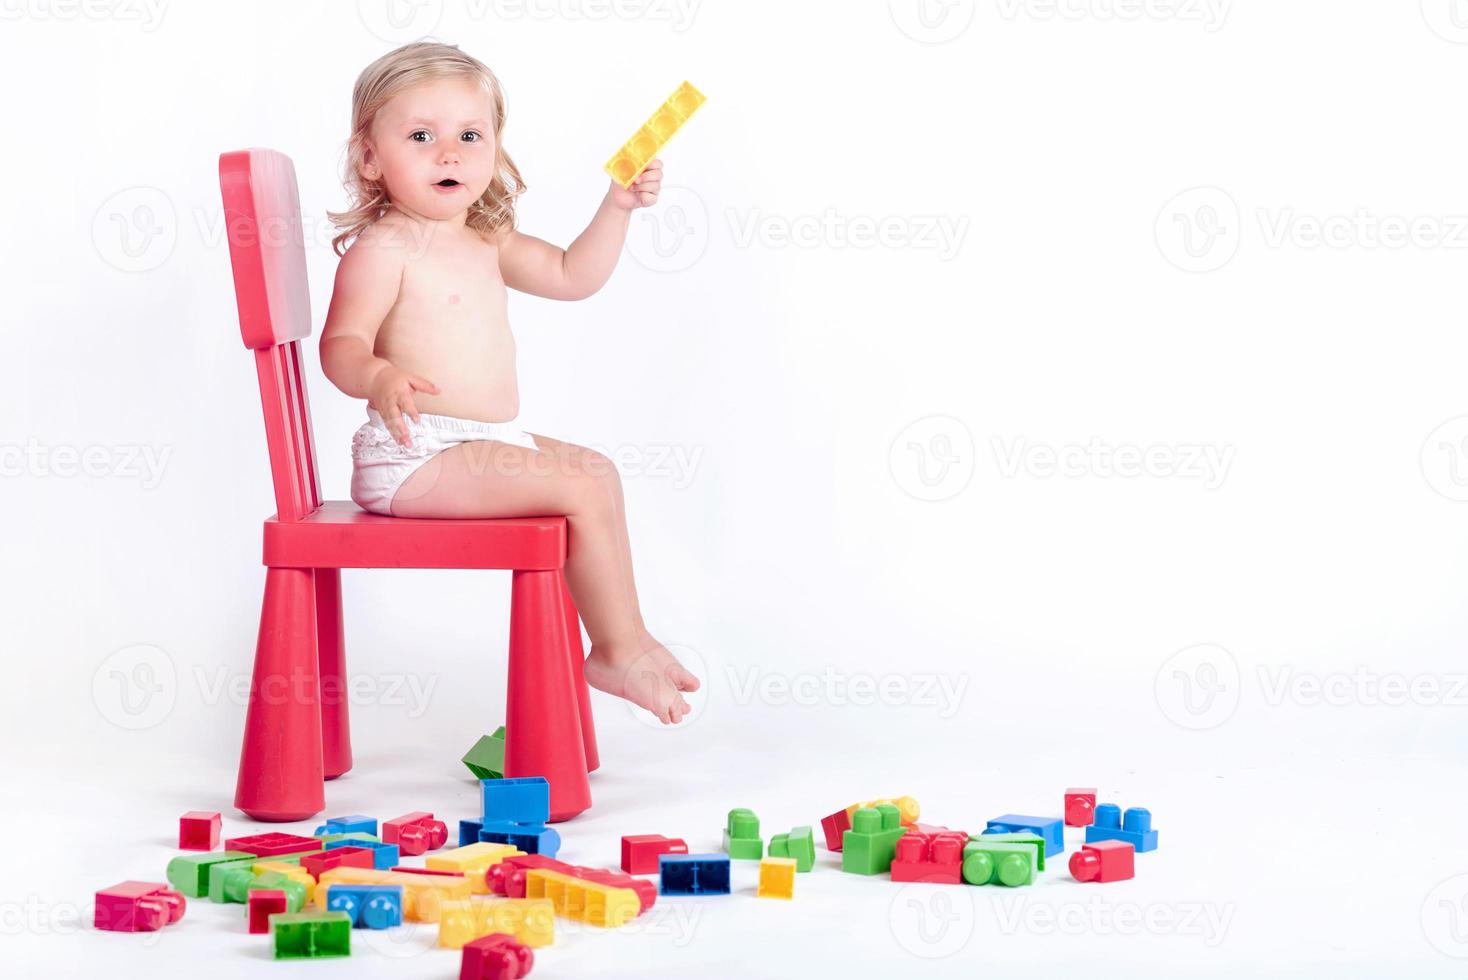 petite fille jouant avec des blocs de construction photo